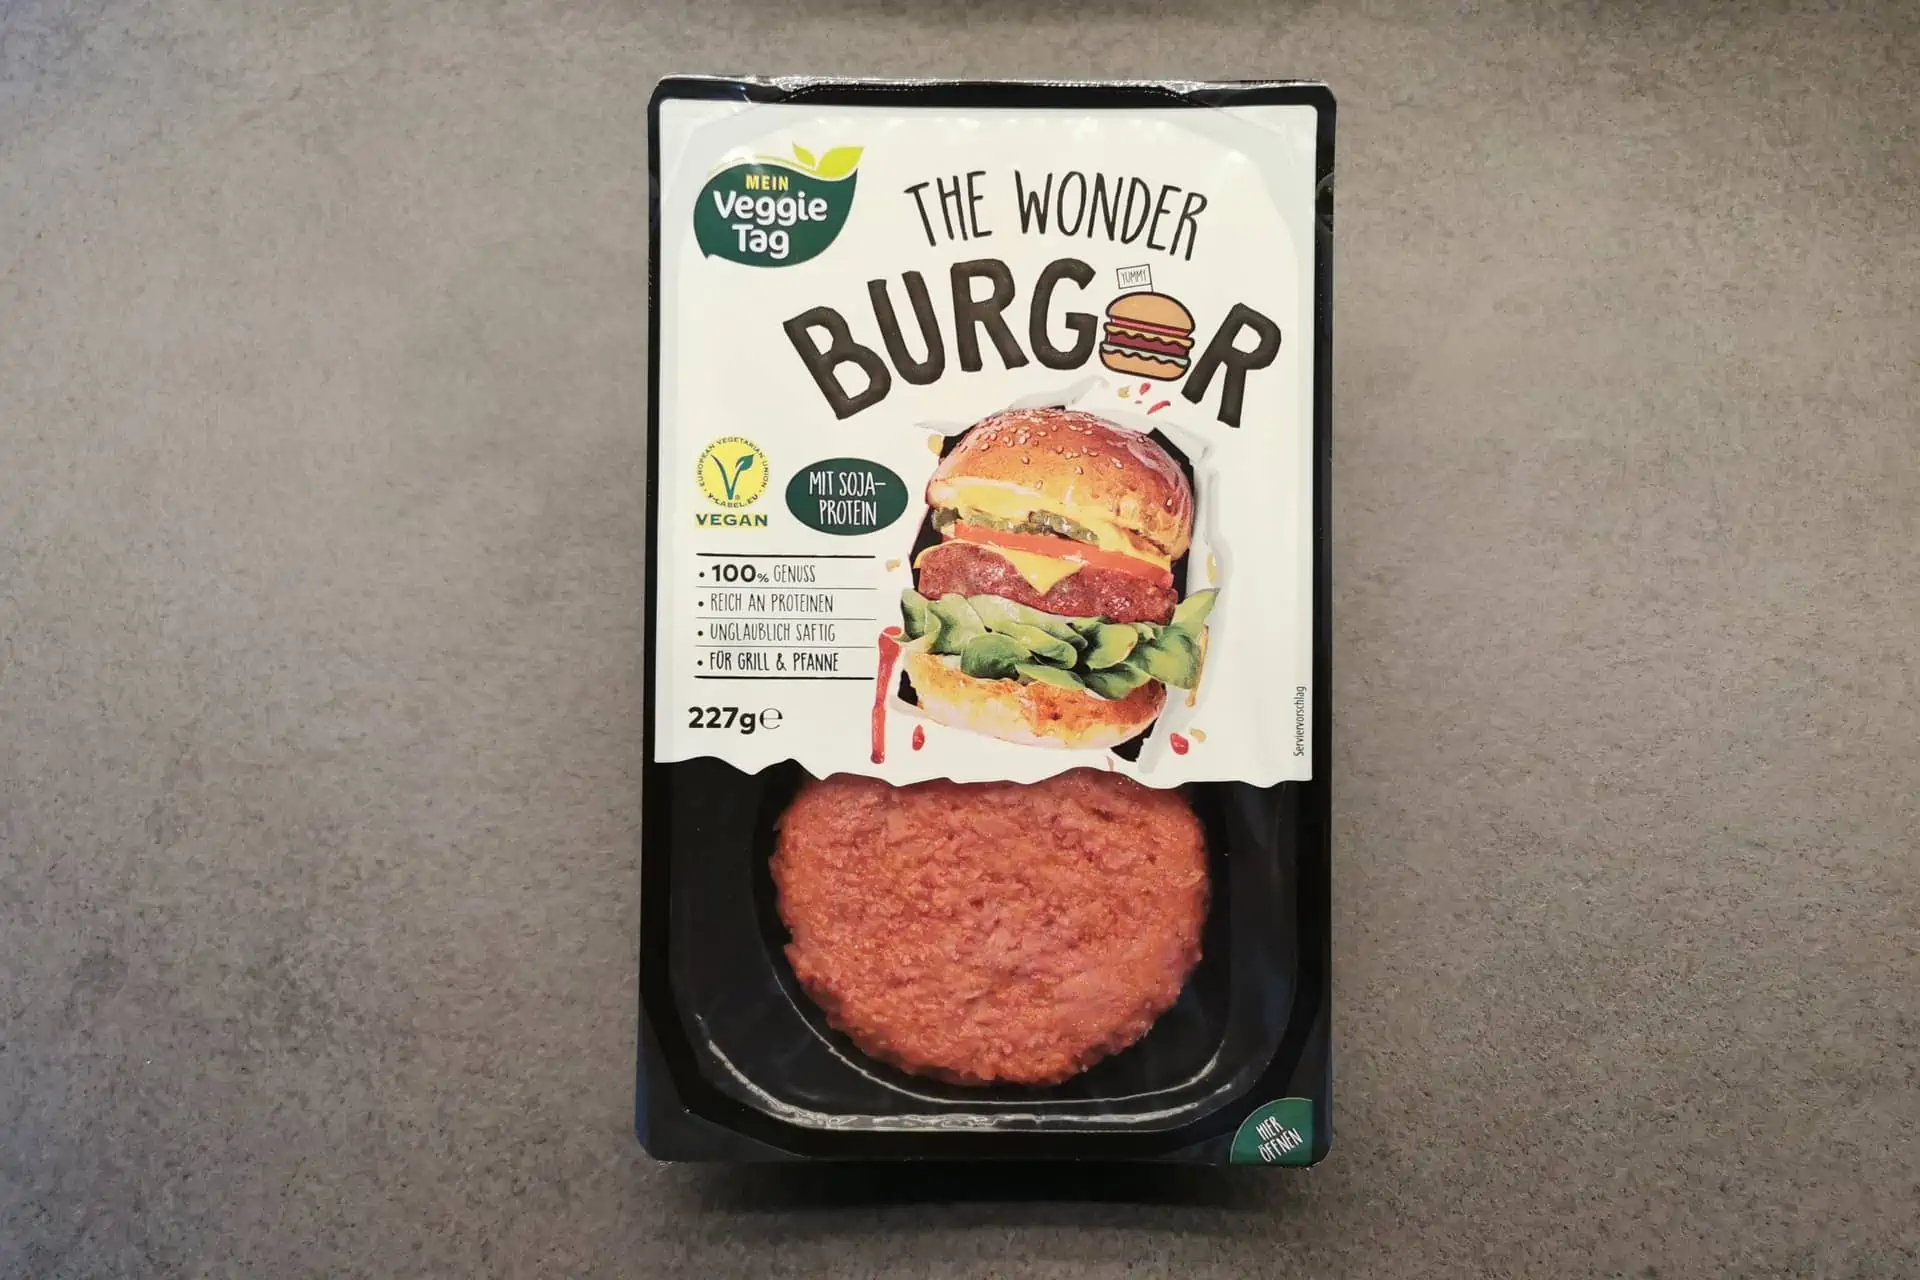 The Wonder - Burger mit Soja Protein